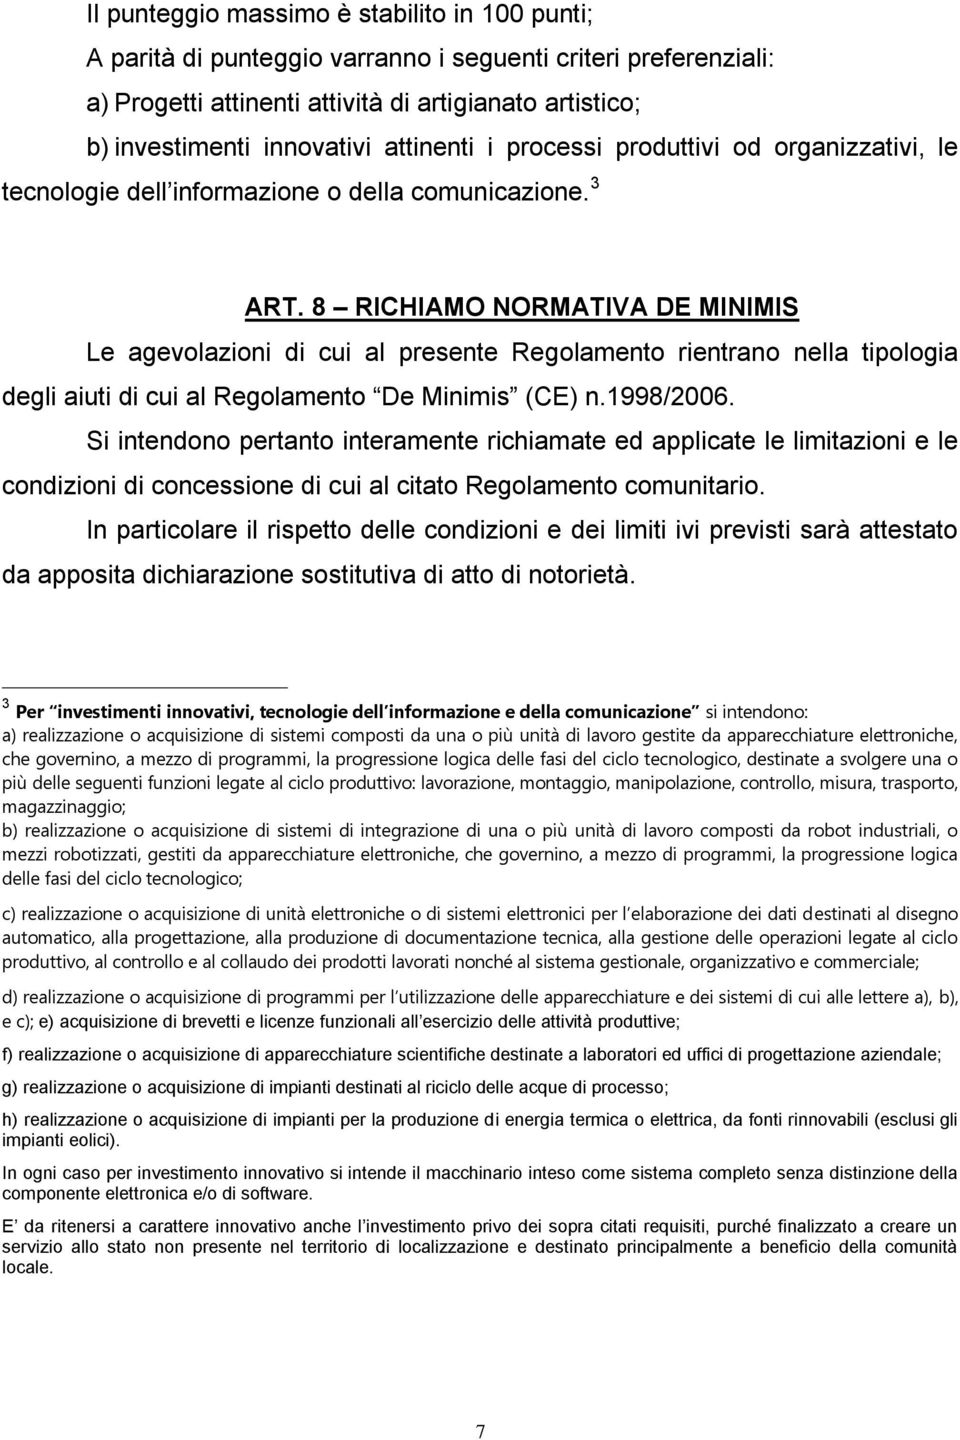 8 RICHIAMO NORMATIVA DE MINIMIS Le agevolazioni di cui al presente Regolamento rientrano nella tipologia degli aiuti di cui al Regolamento De Minimis (CE) n.1998/2006.